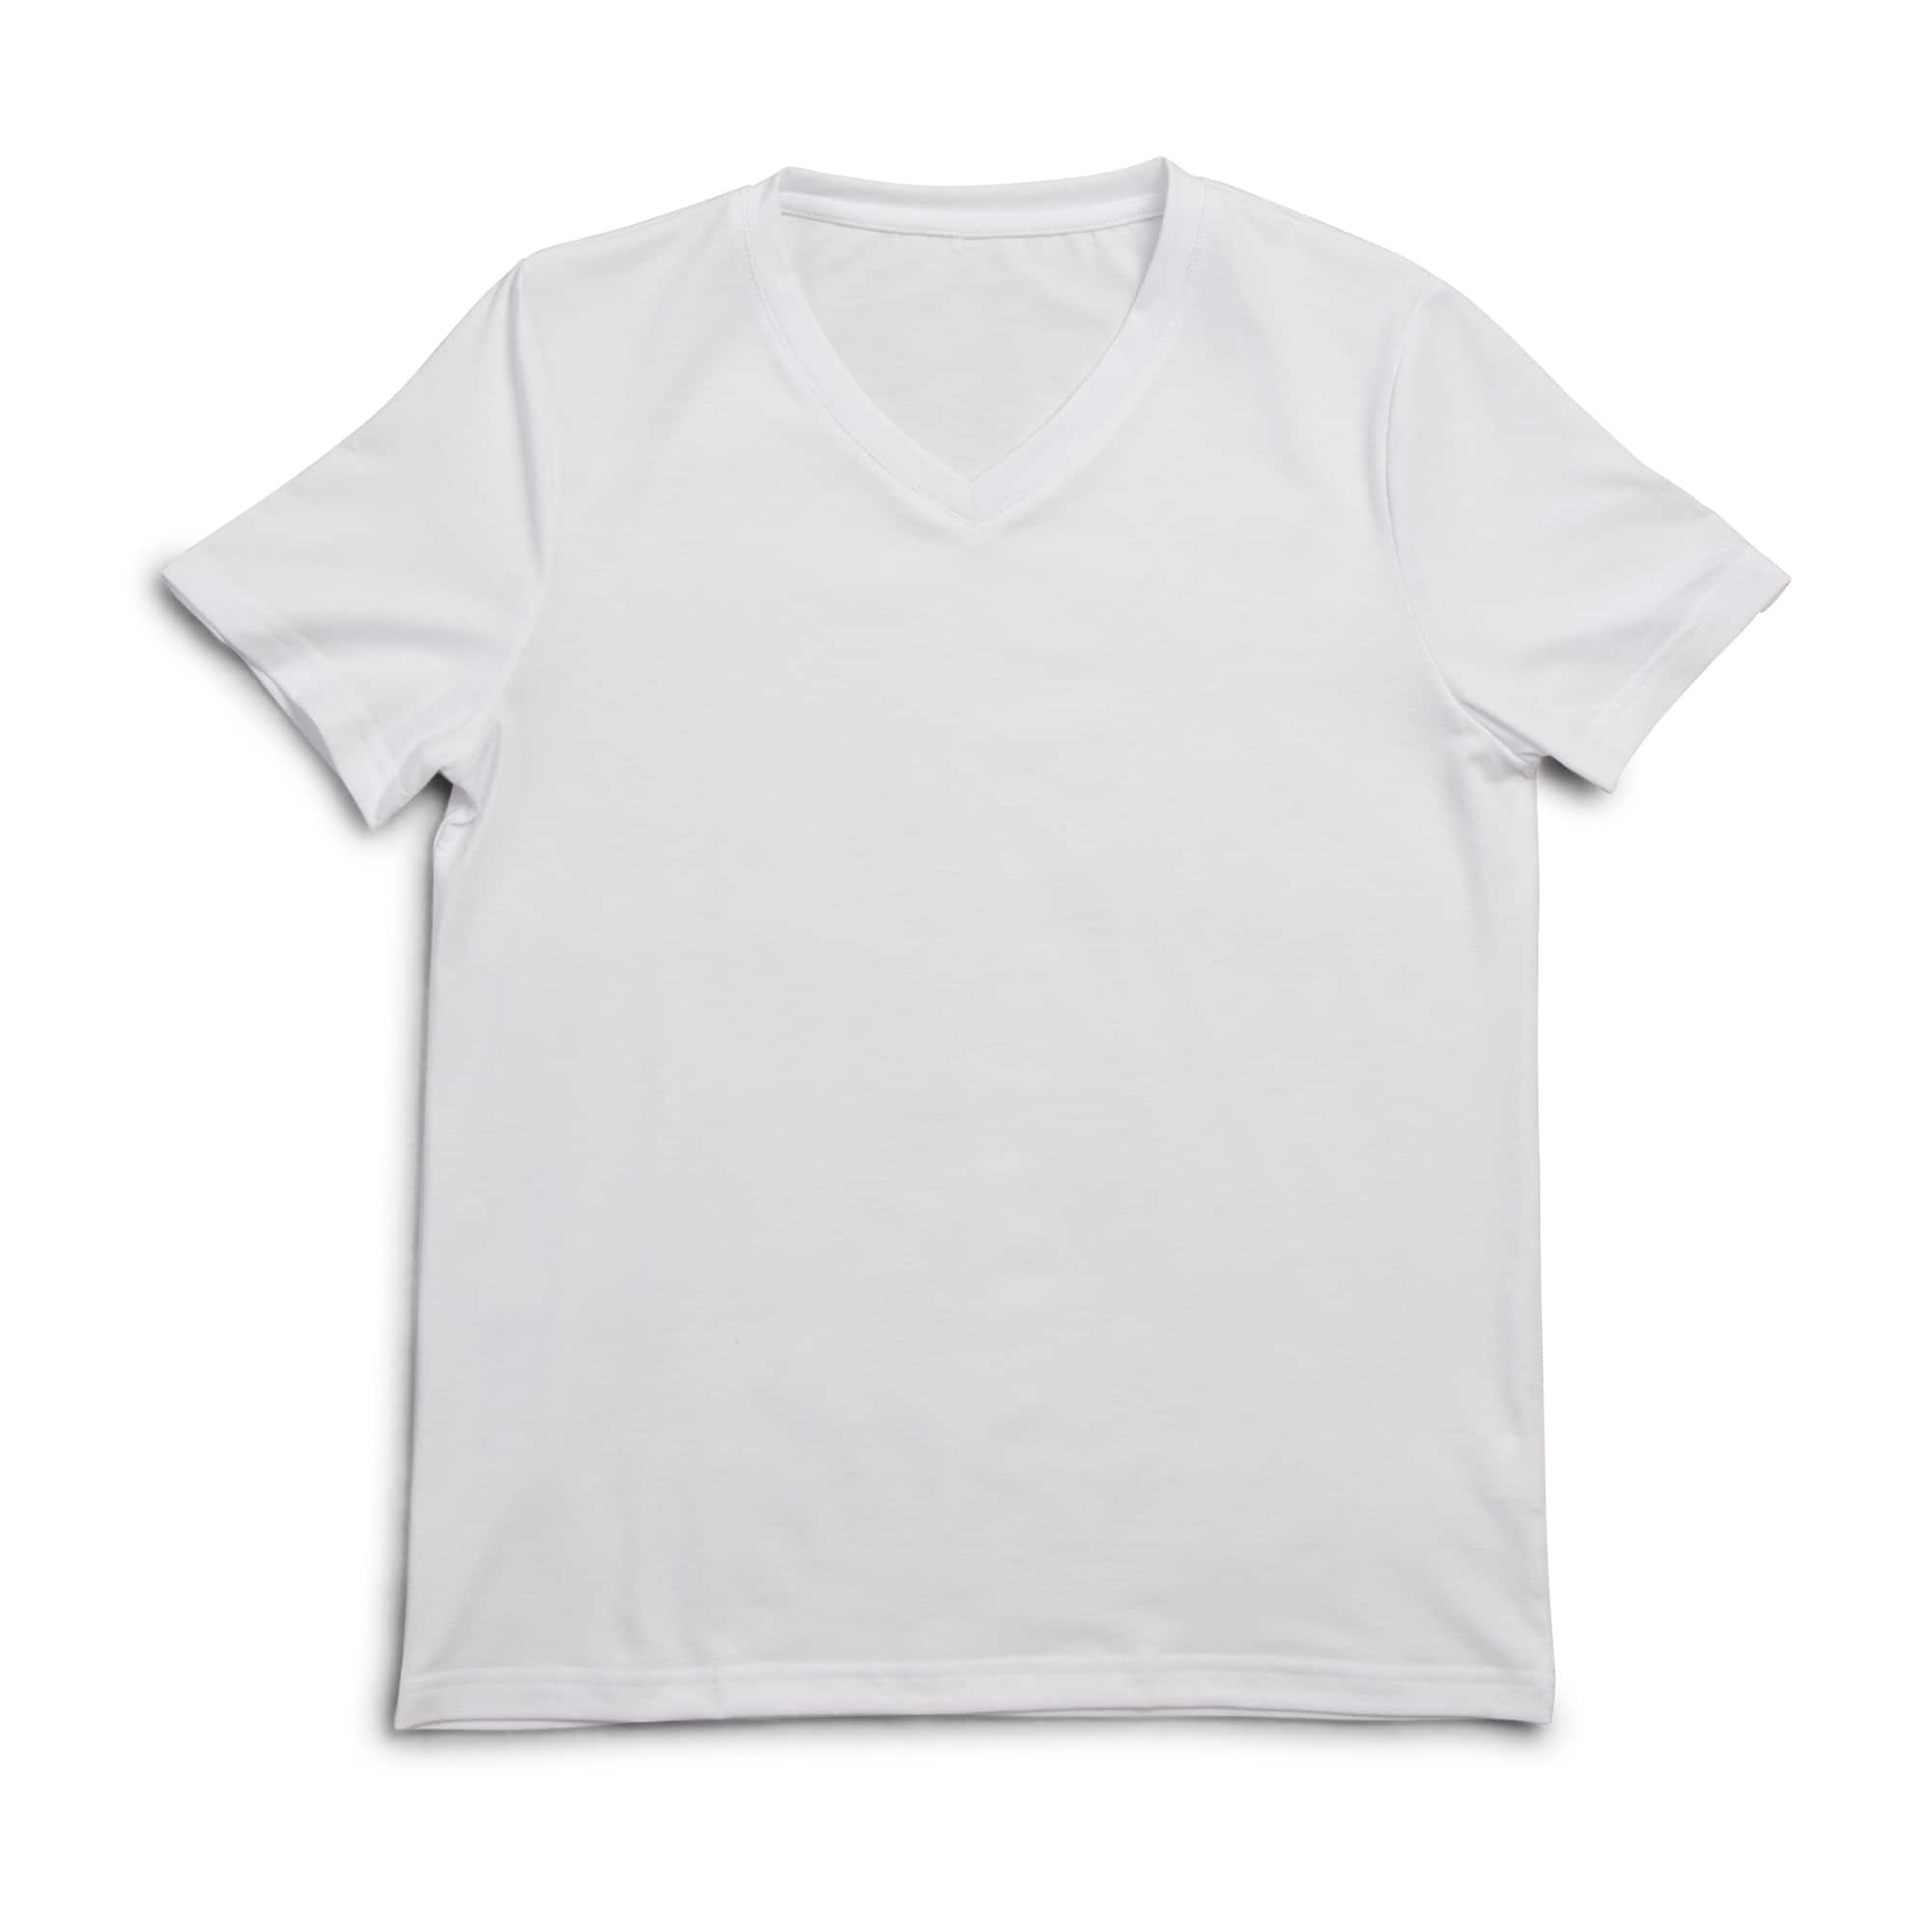 michaels white t shirt